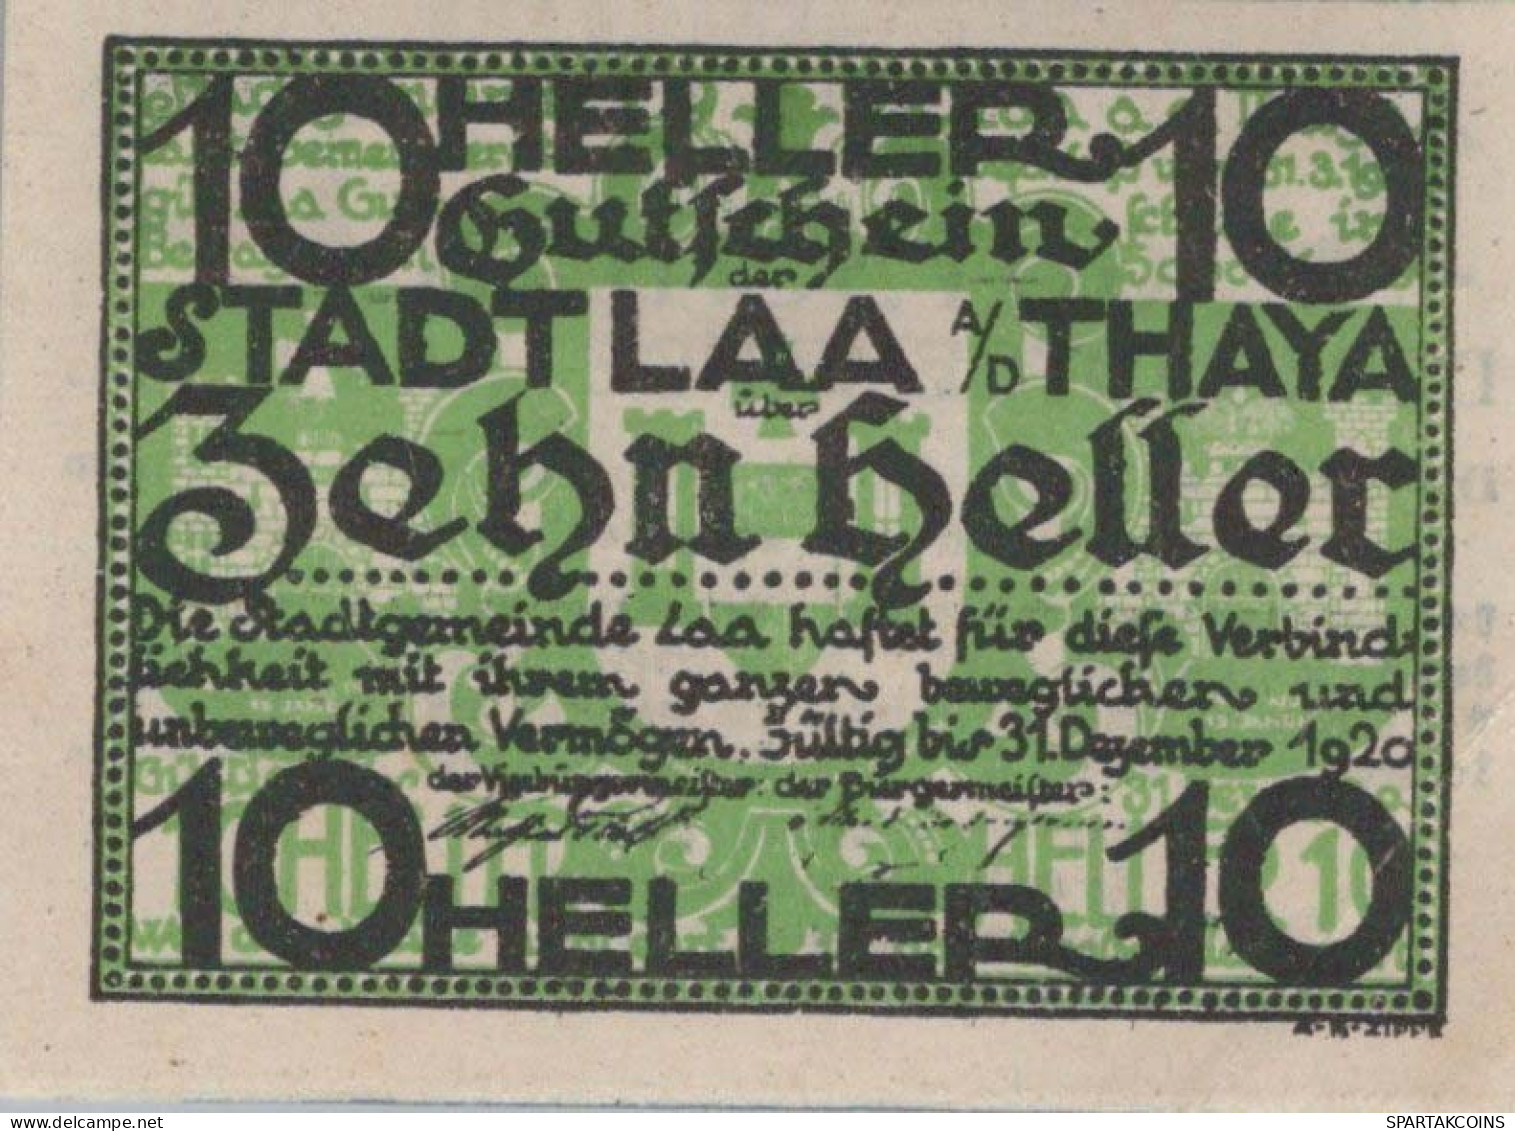 10 HELLER 1920 Stadt Laa An Der Thaya Österreich Notgeld Banknote #PD826 - [11] Lokale Uitgaven